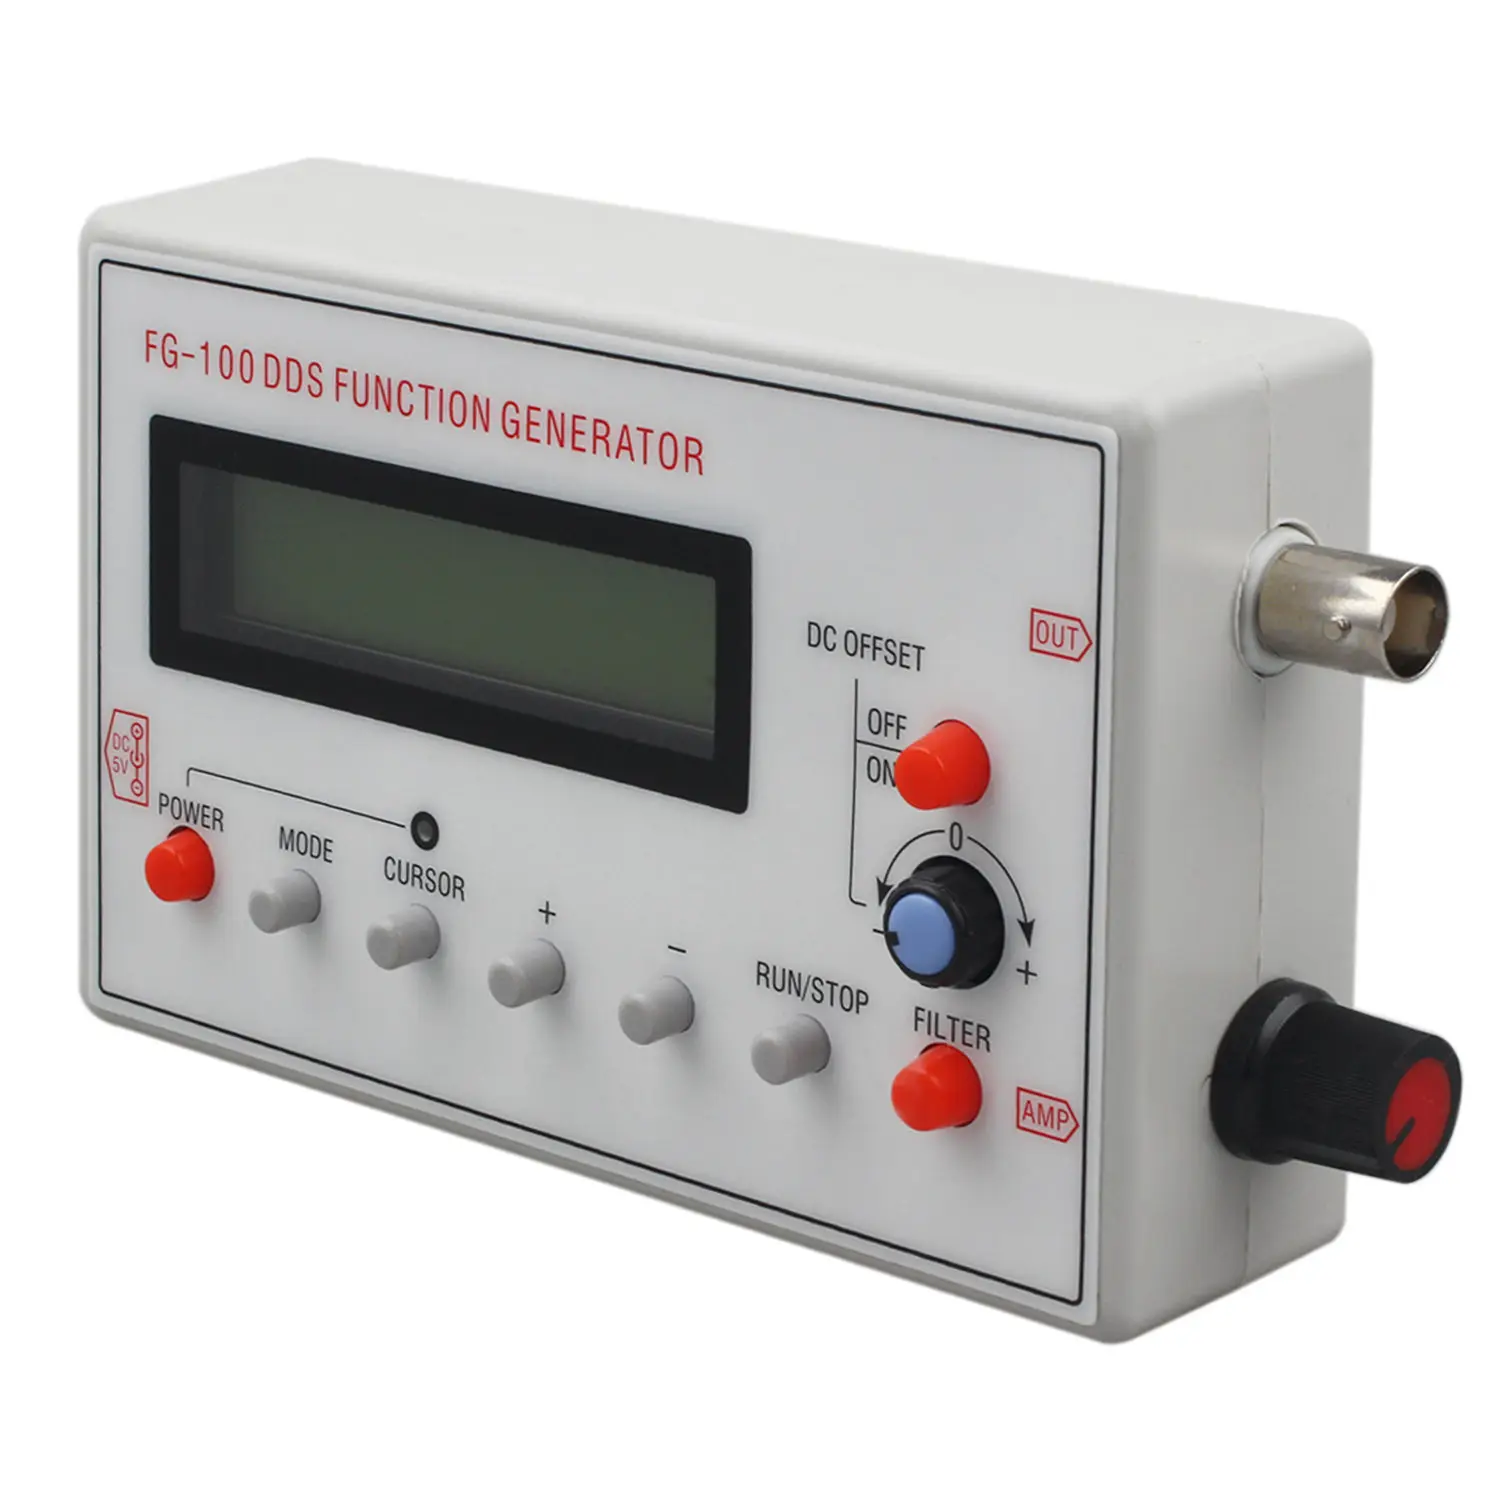 

FG-100 DDS функция генератора сигналов, счетчик частоты 1 Гц-500 кГц